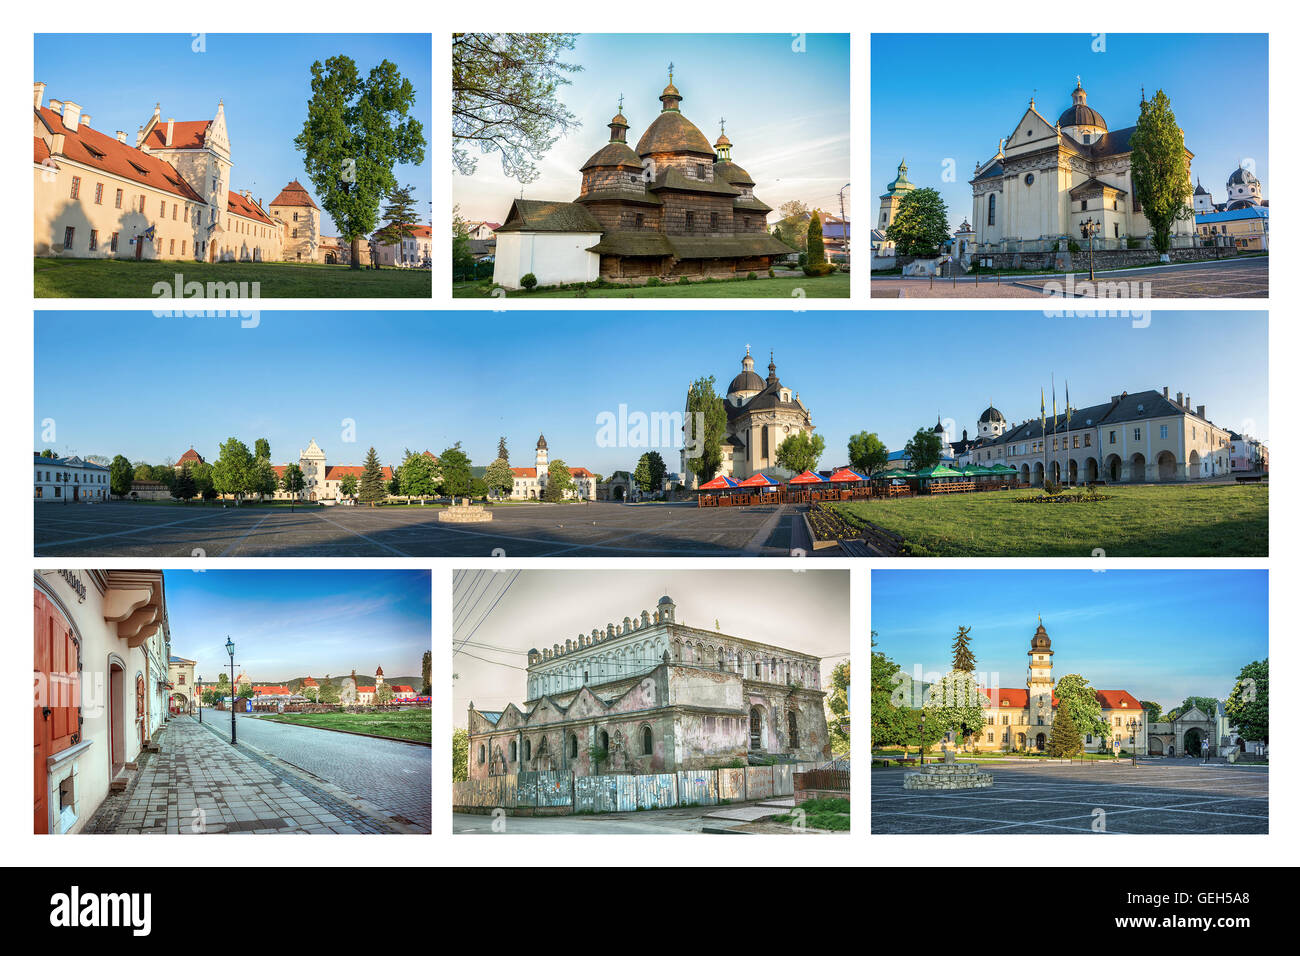 Ensemble de vues de la vieille ville de l'viv en Ukraine. Collage Banque D'Images